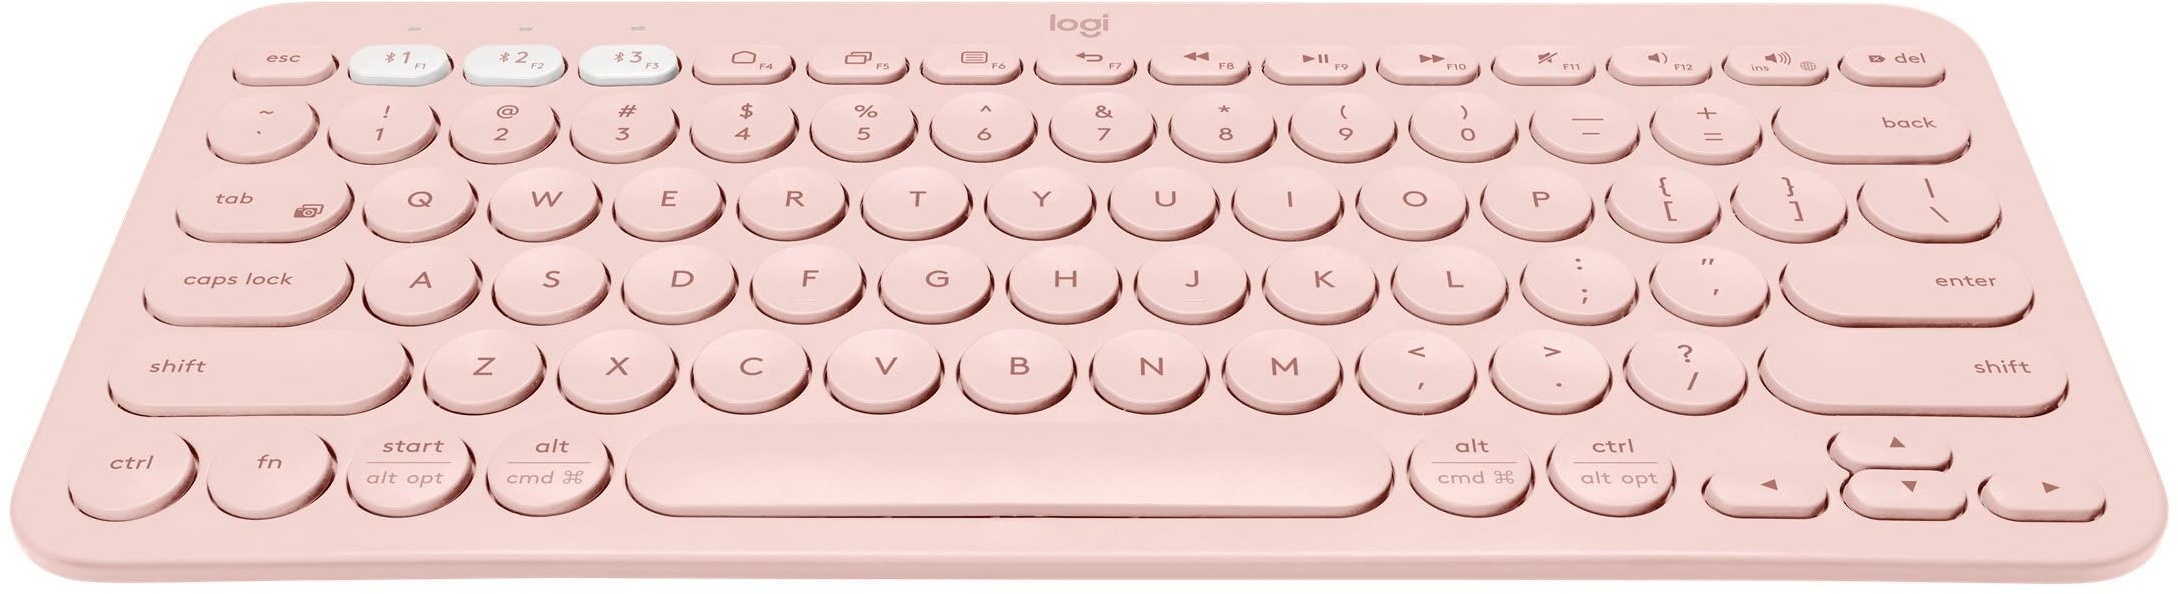 Logitech K380 kabellose Multi-Device Bluetooth-Tastatur mit Easy-Switch für bis zu 3 Geräte, schlank – PC, Notebook, Windows, Mac, Chrome OS, Android, iPad OS, Apple TV, Deutsches QWERTZ-Layout - Rose